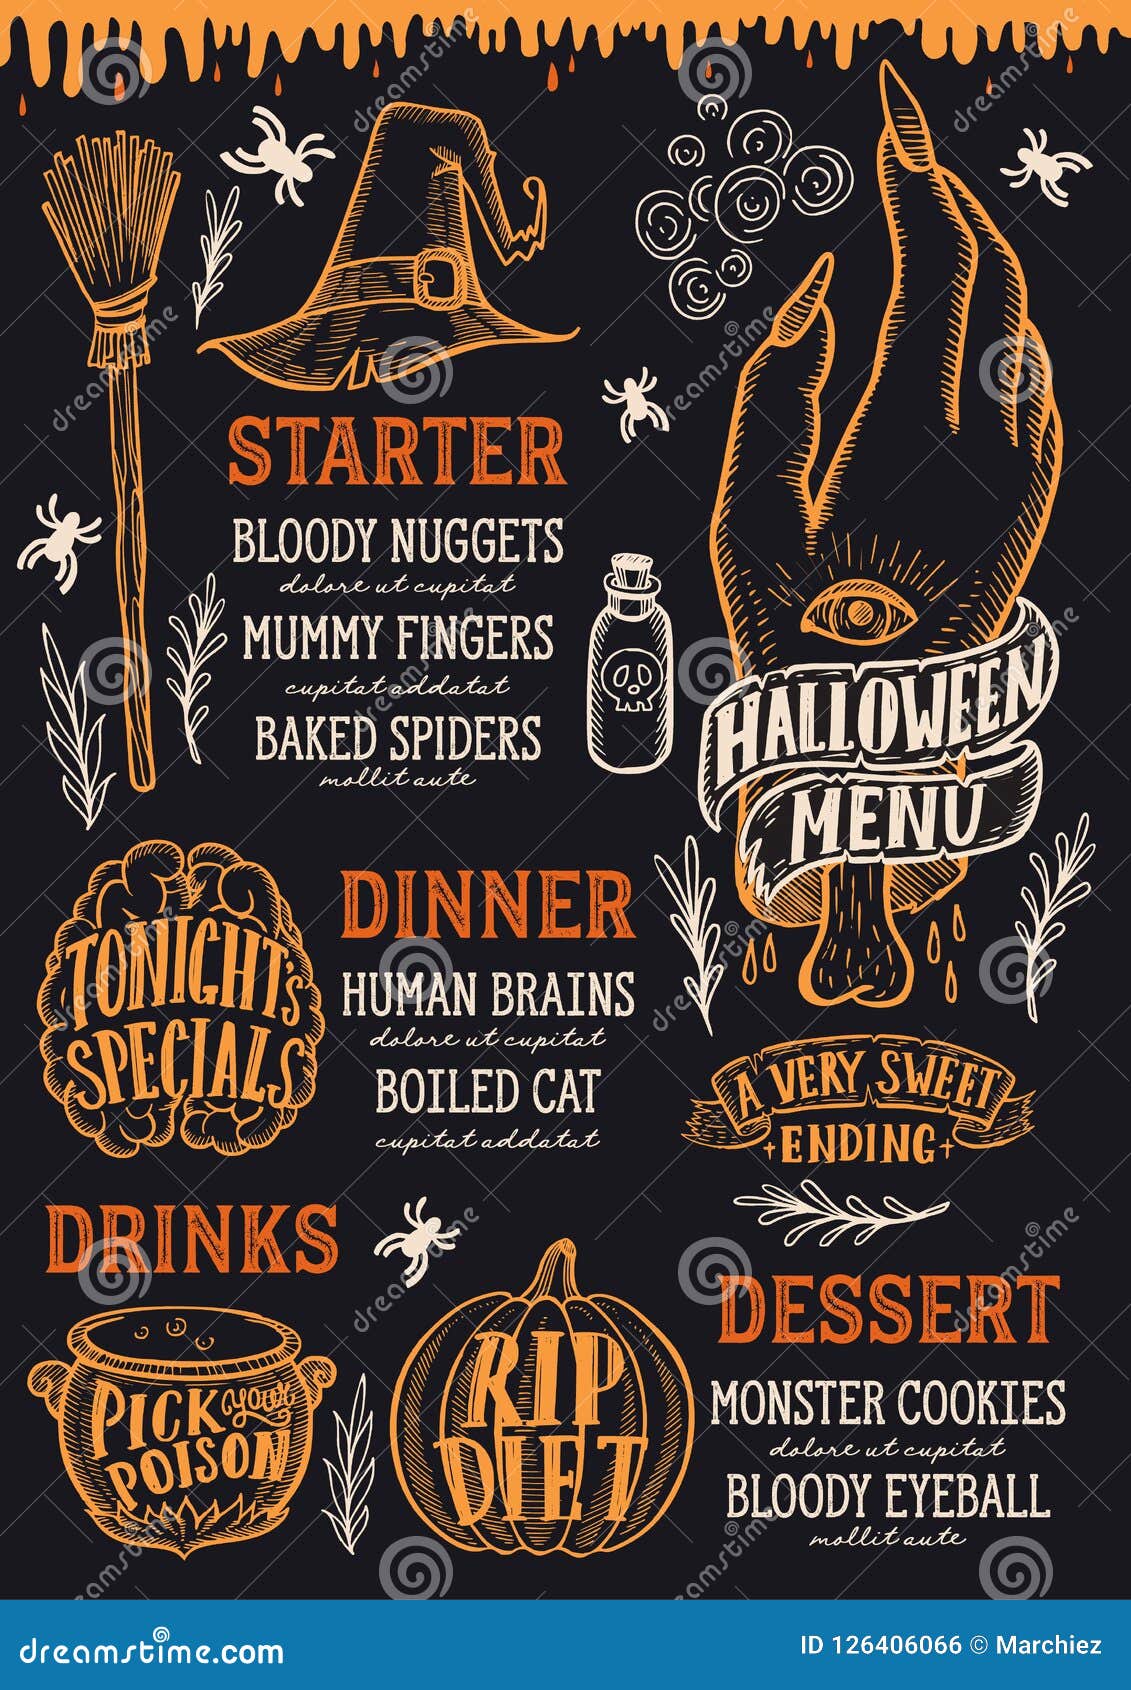  Halloween Food Menu  On A Chalkboard Stock Vector 